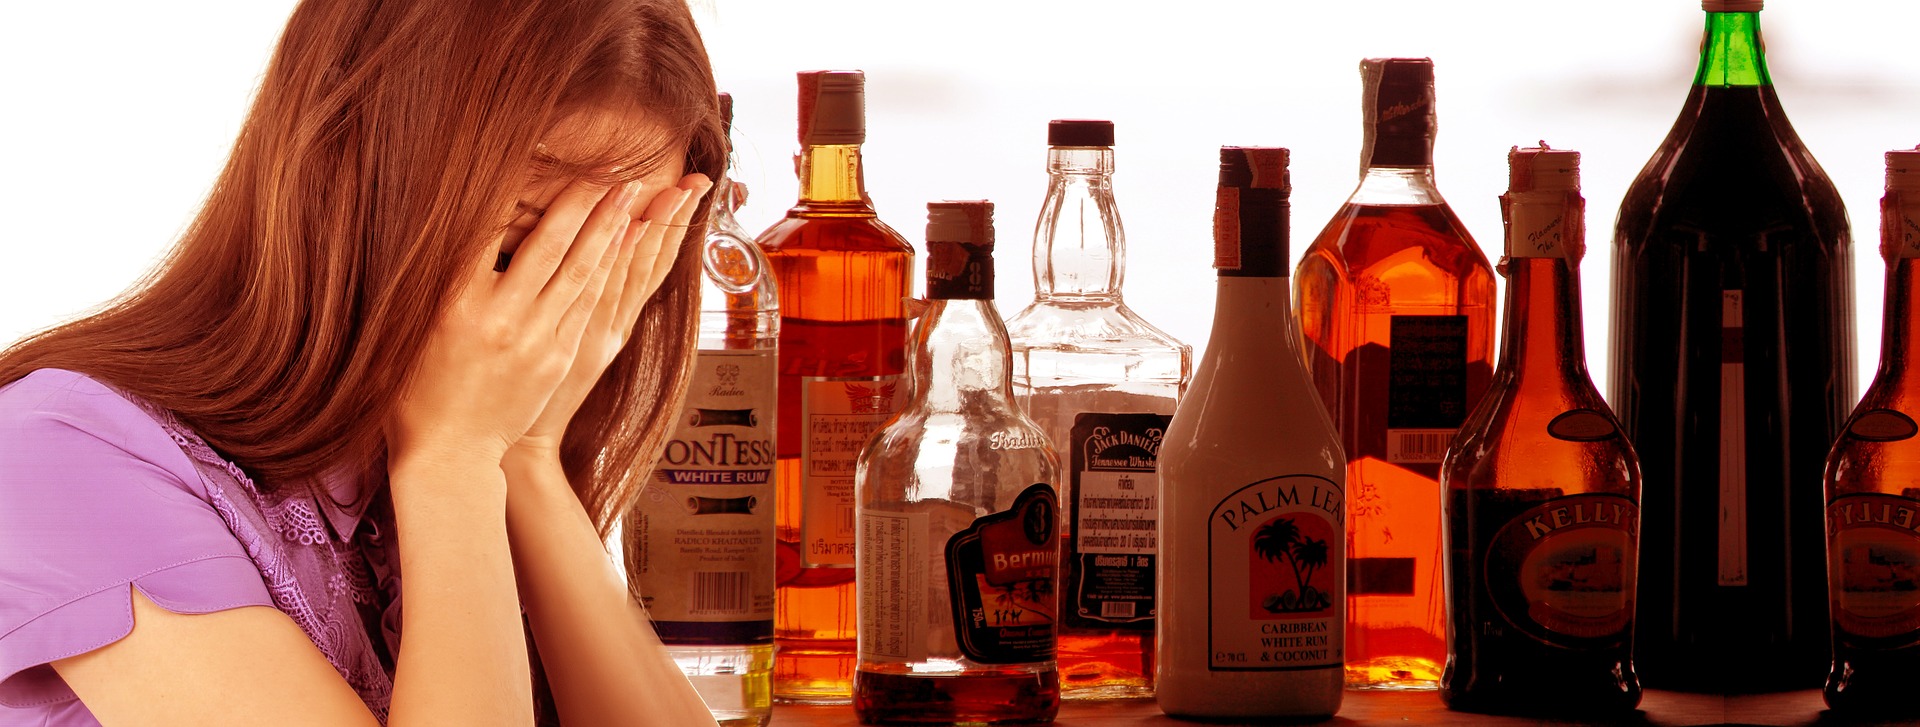 žena alkoholička nezvládá svou závislost